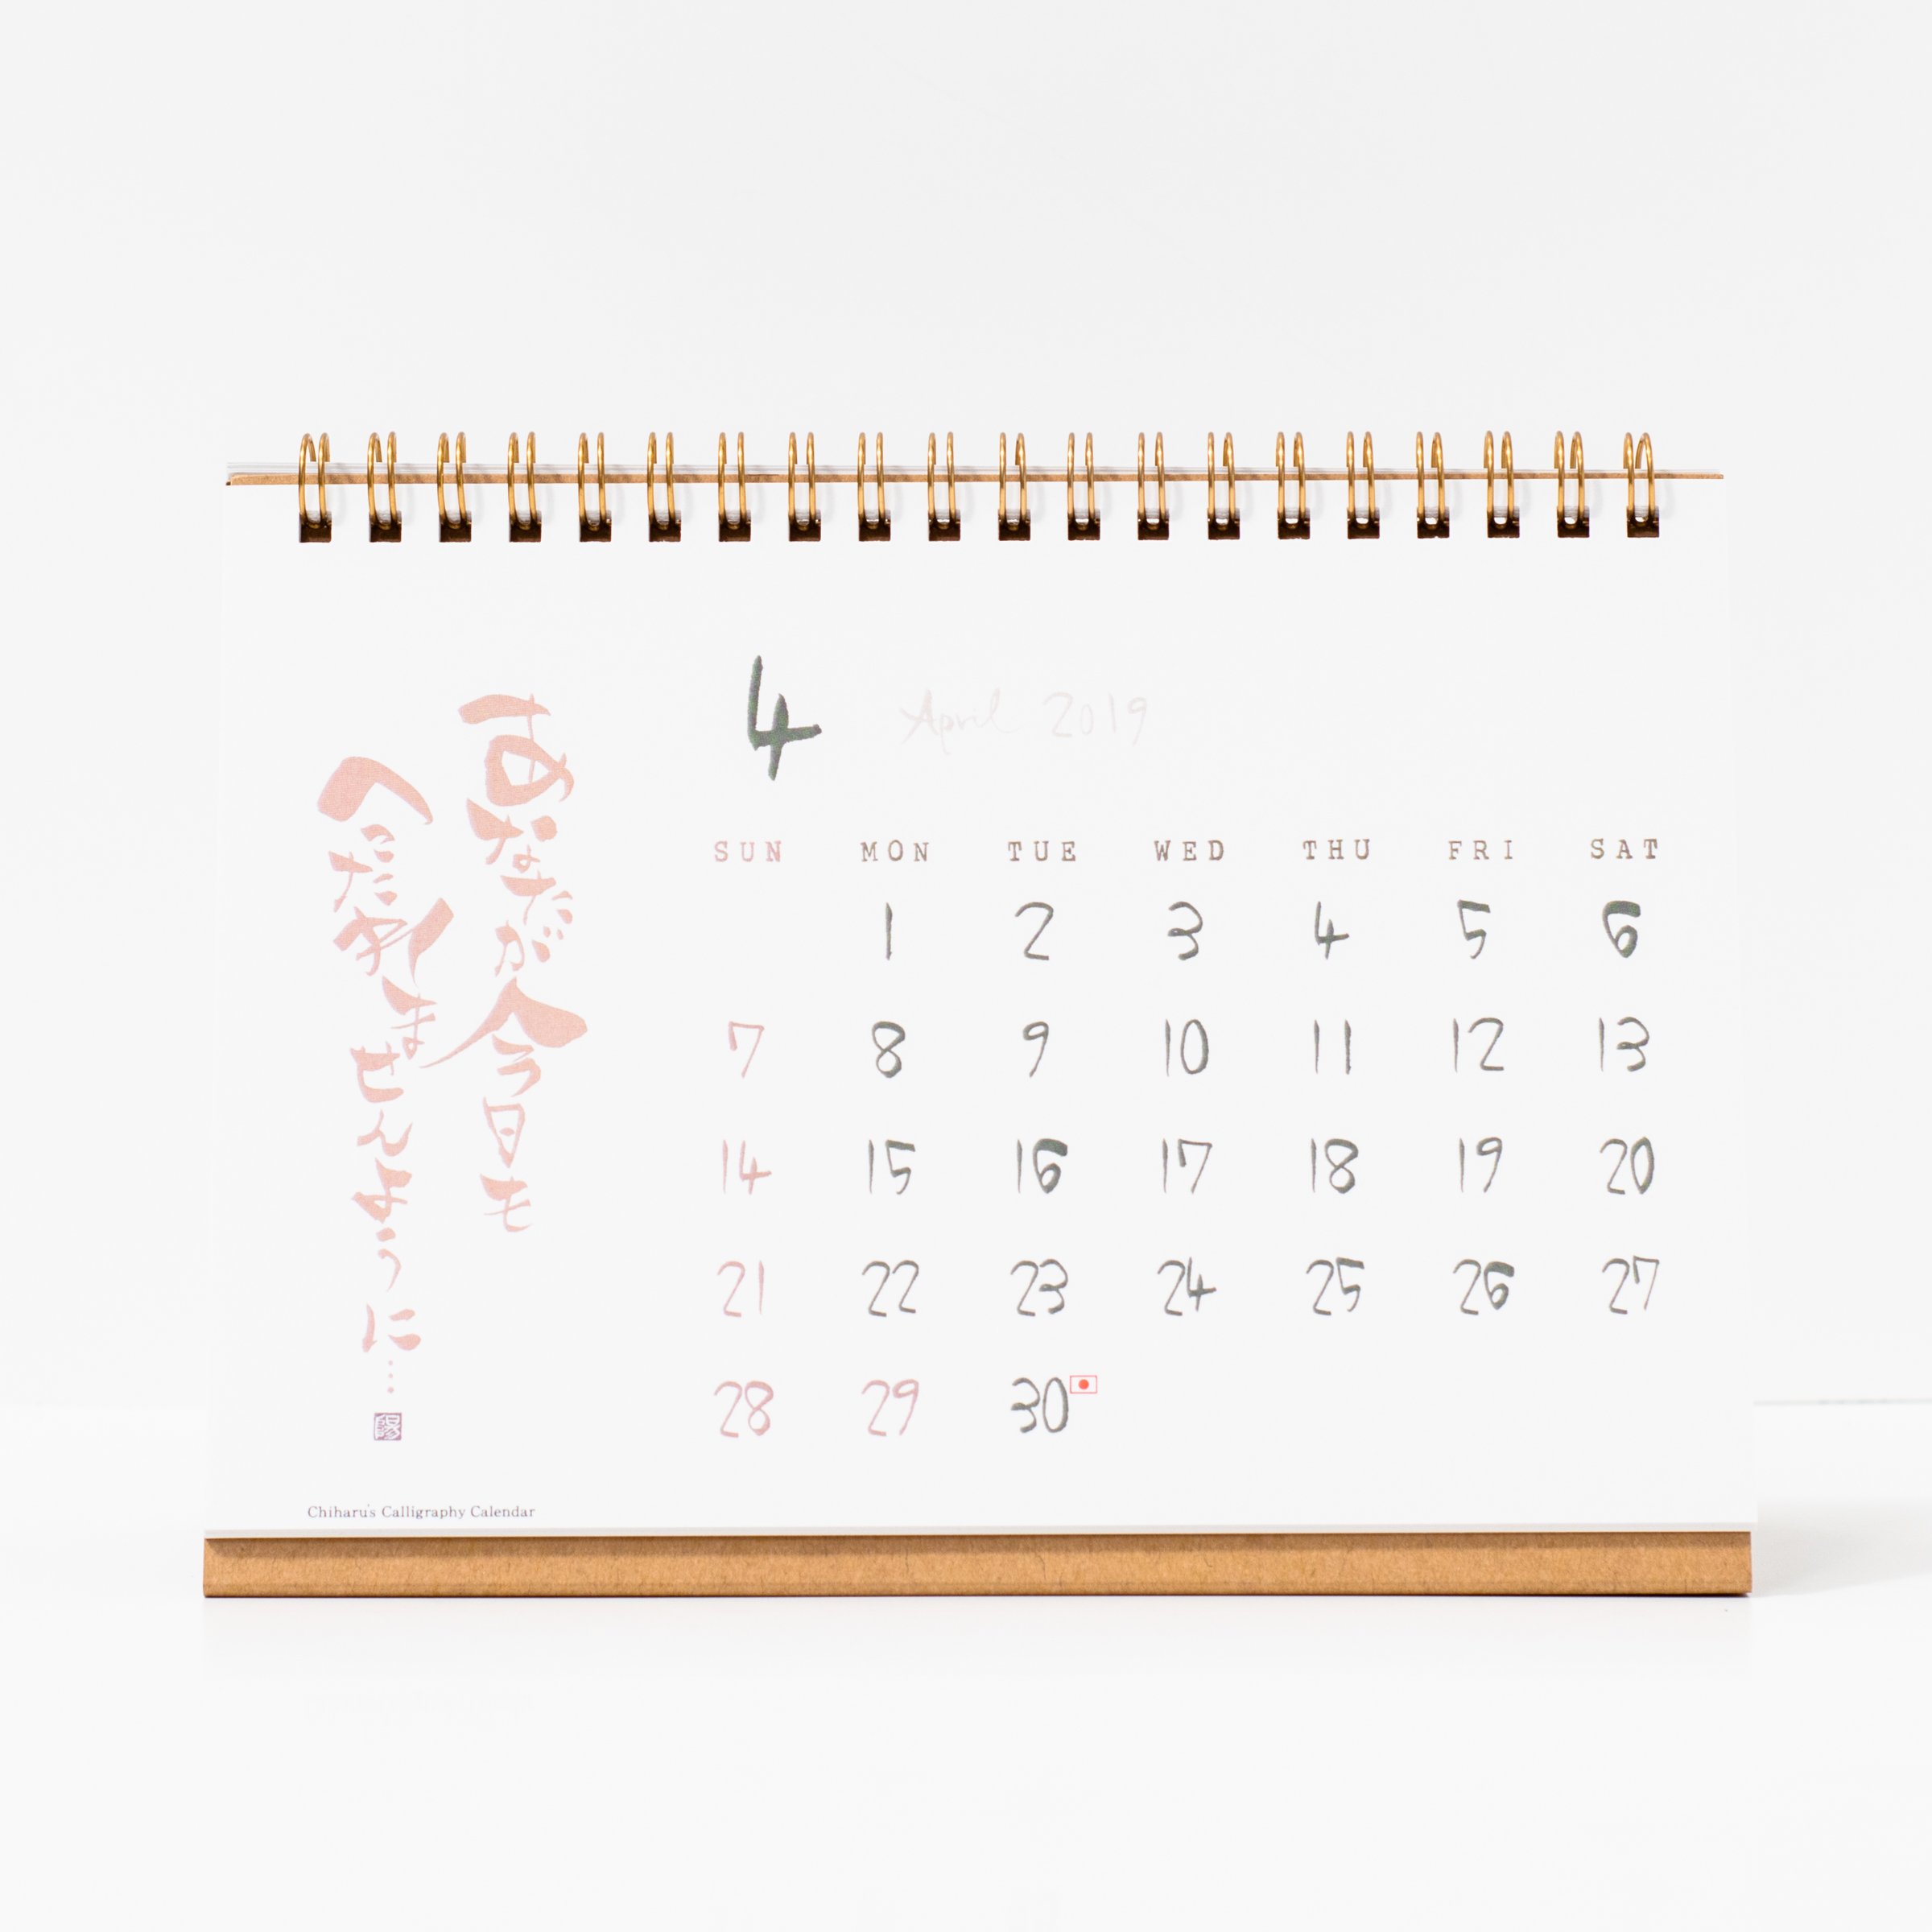 「書家 Chiharu 様」製作のオリジナルカレンダー ギャラリー写真1